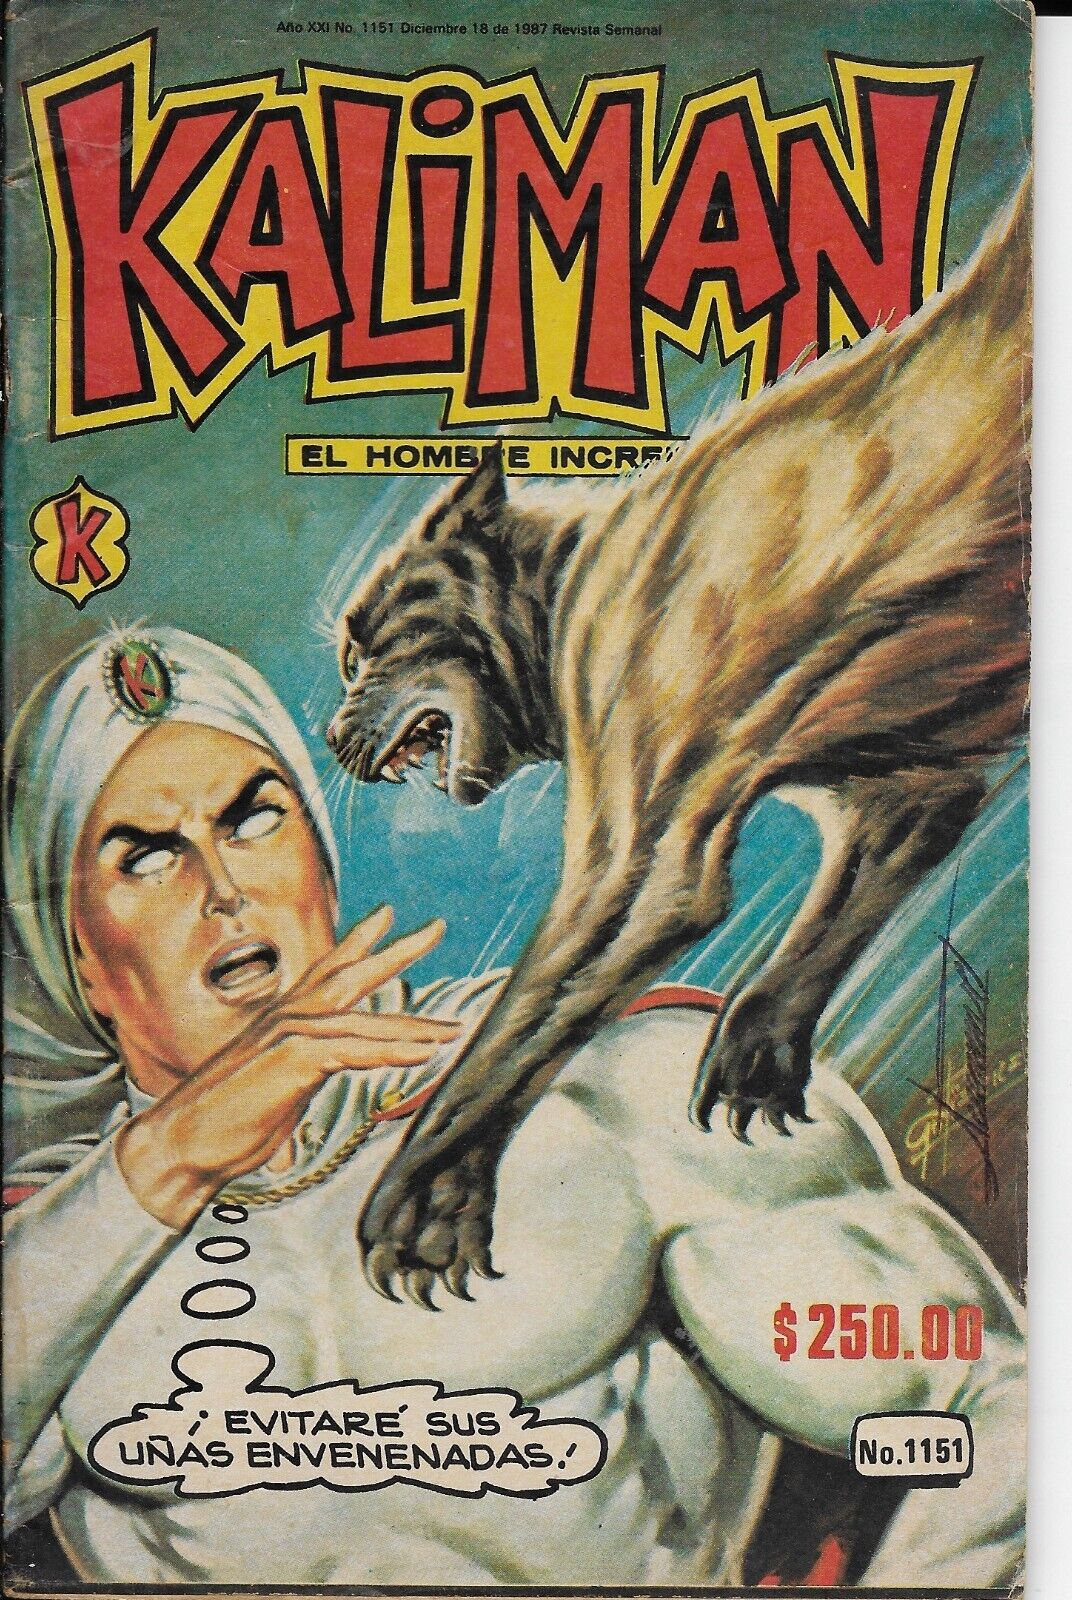 Kaliman El Hombre Increible #1151 - Diciembre 18, 1987 - Mexico